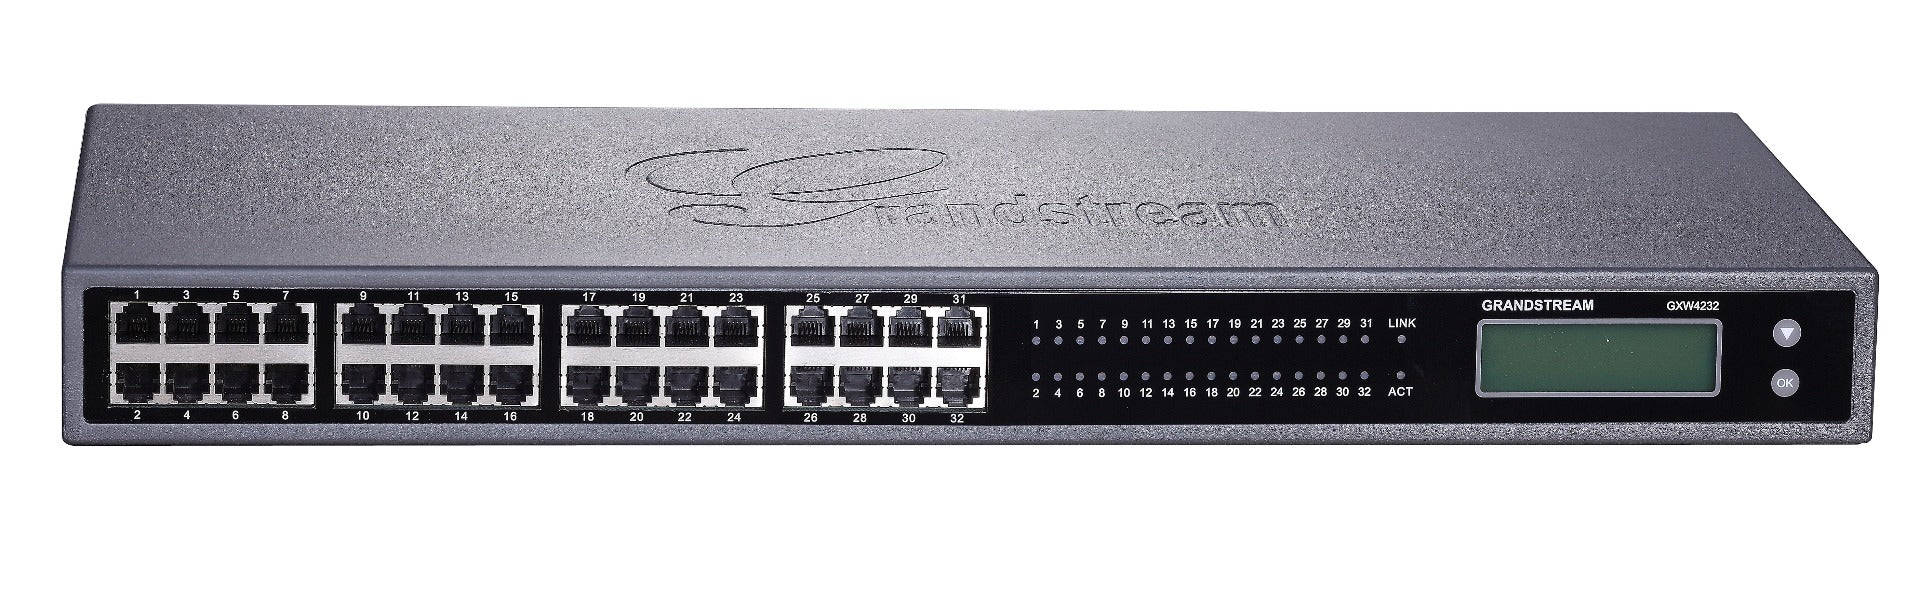 Grandstream GXW4232 Analog VoIP 32 Port FXS Gateway